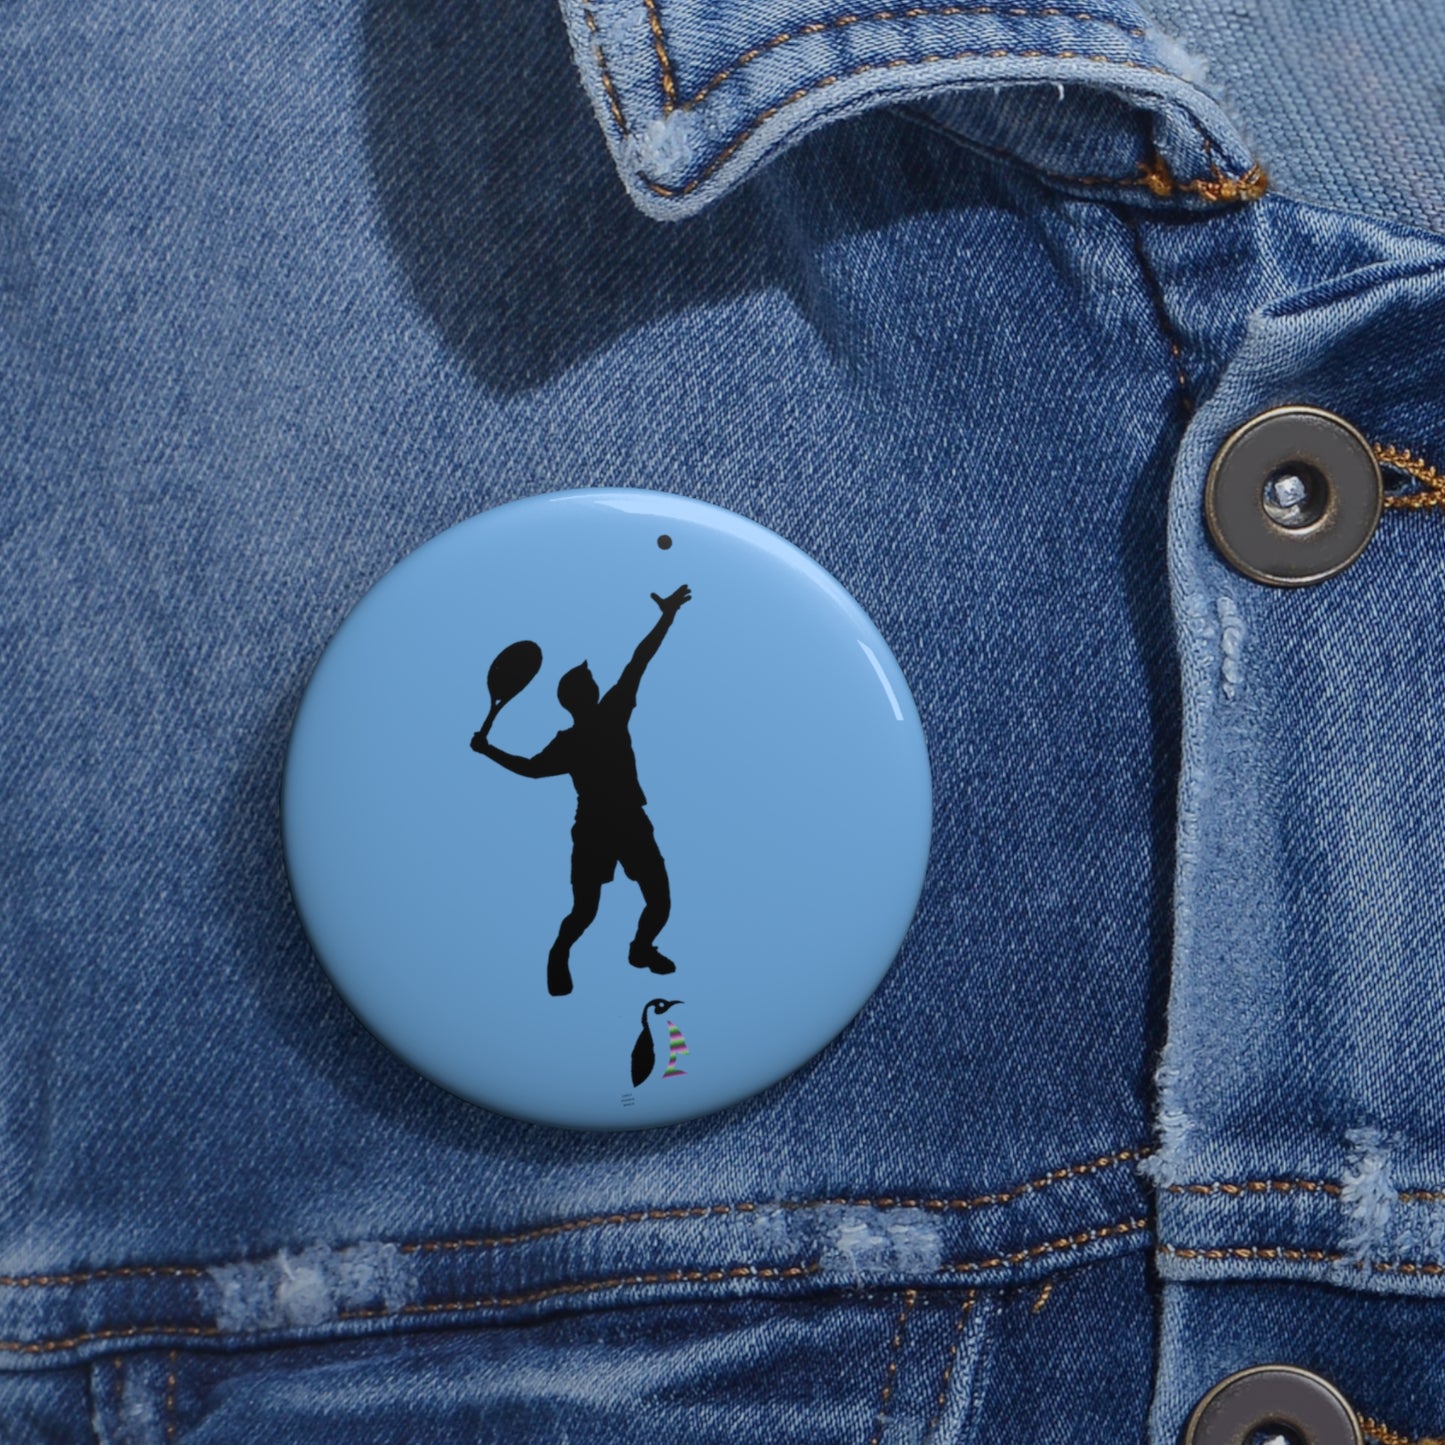 Custom Pin Buttons Tennis Lite Blue